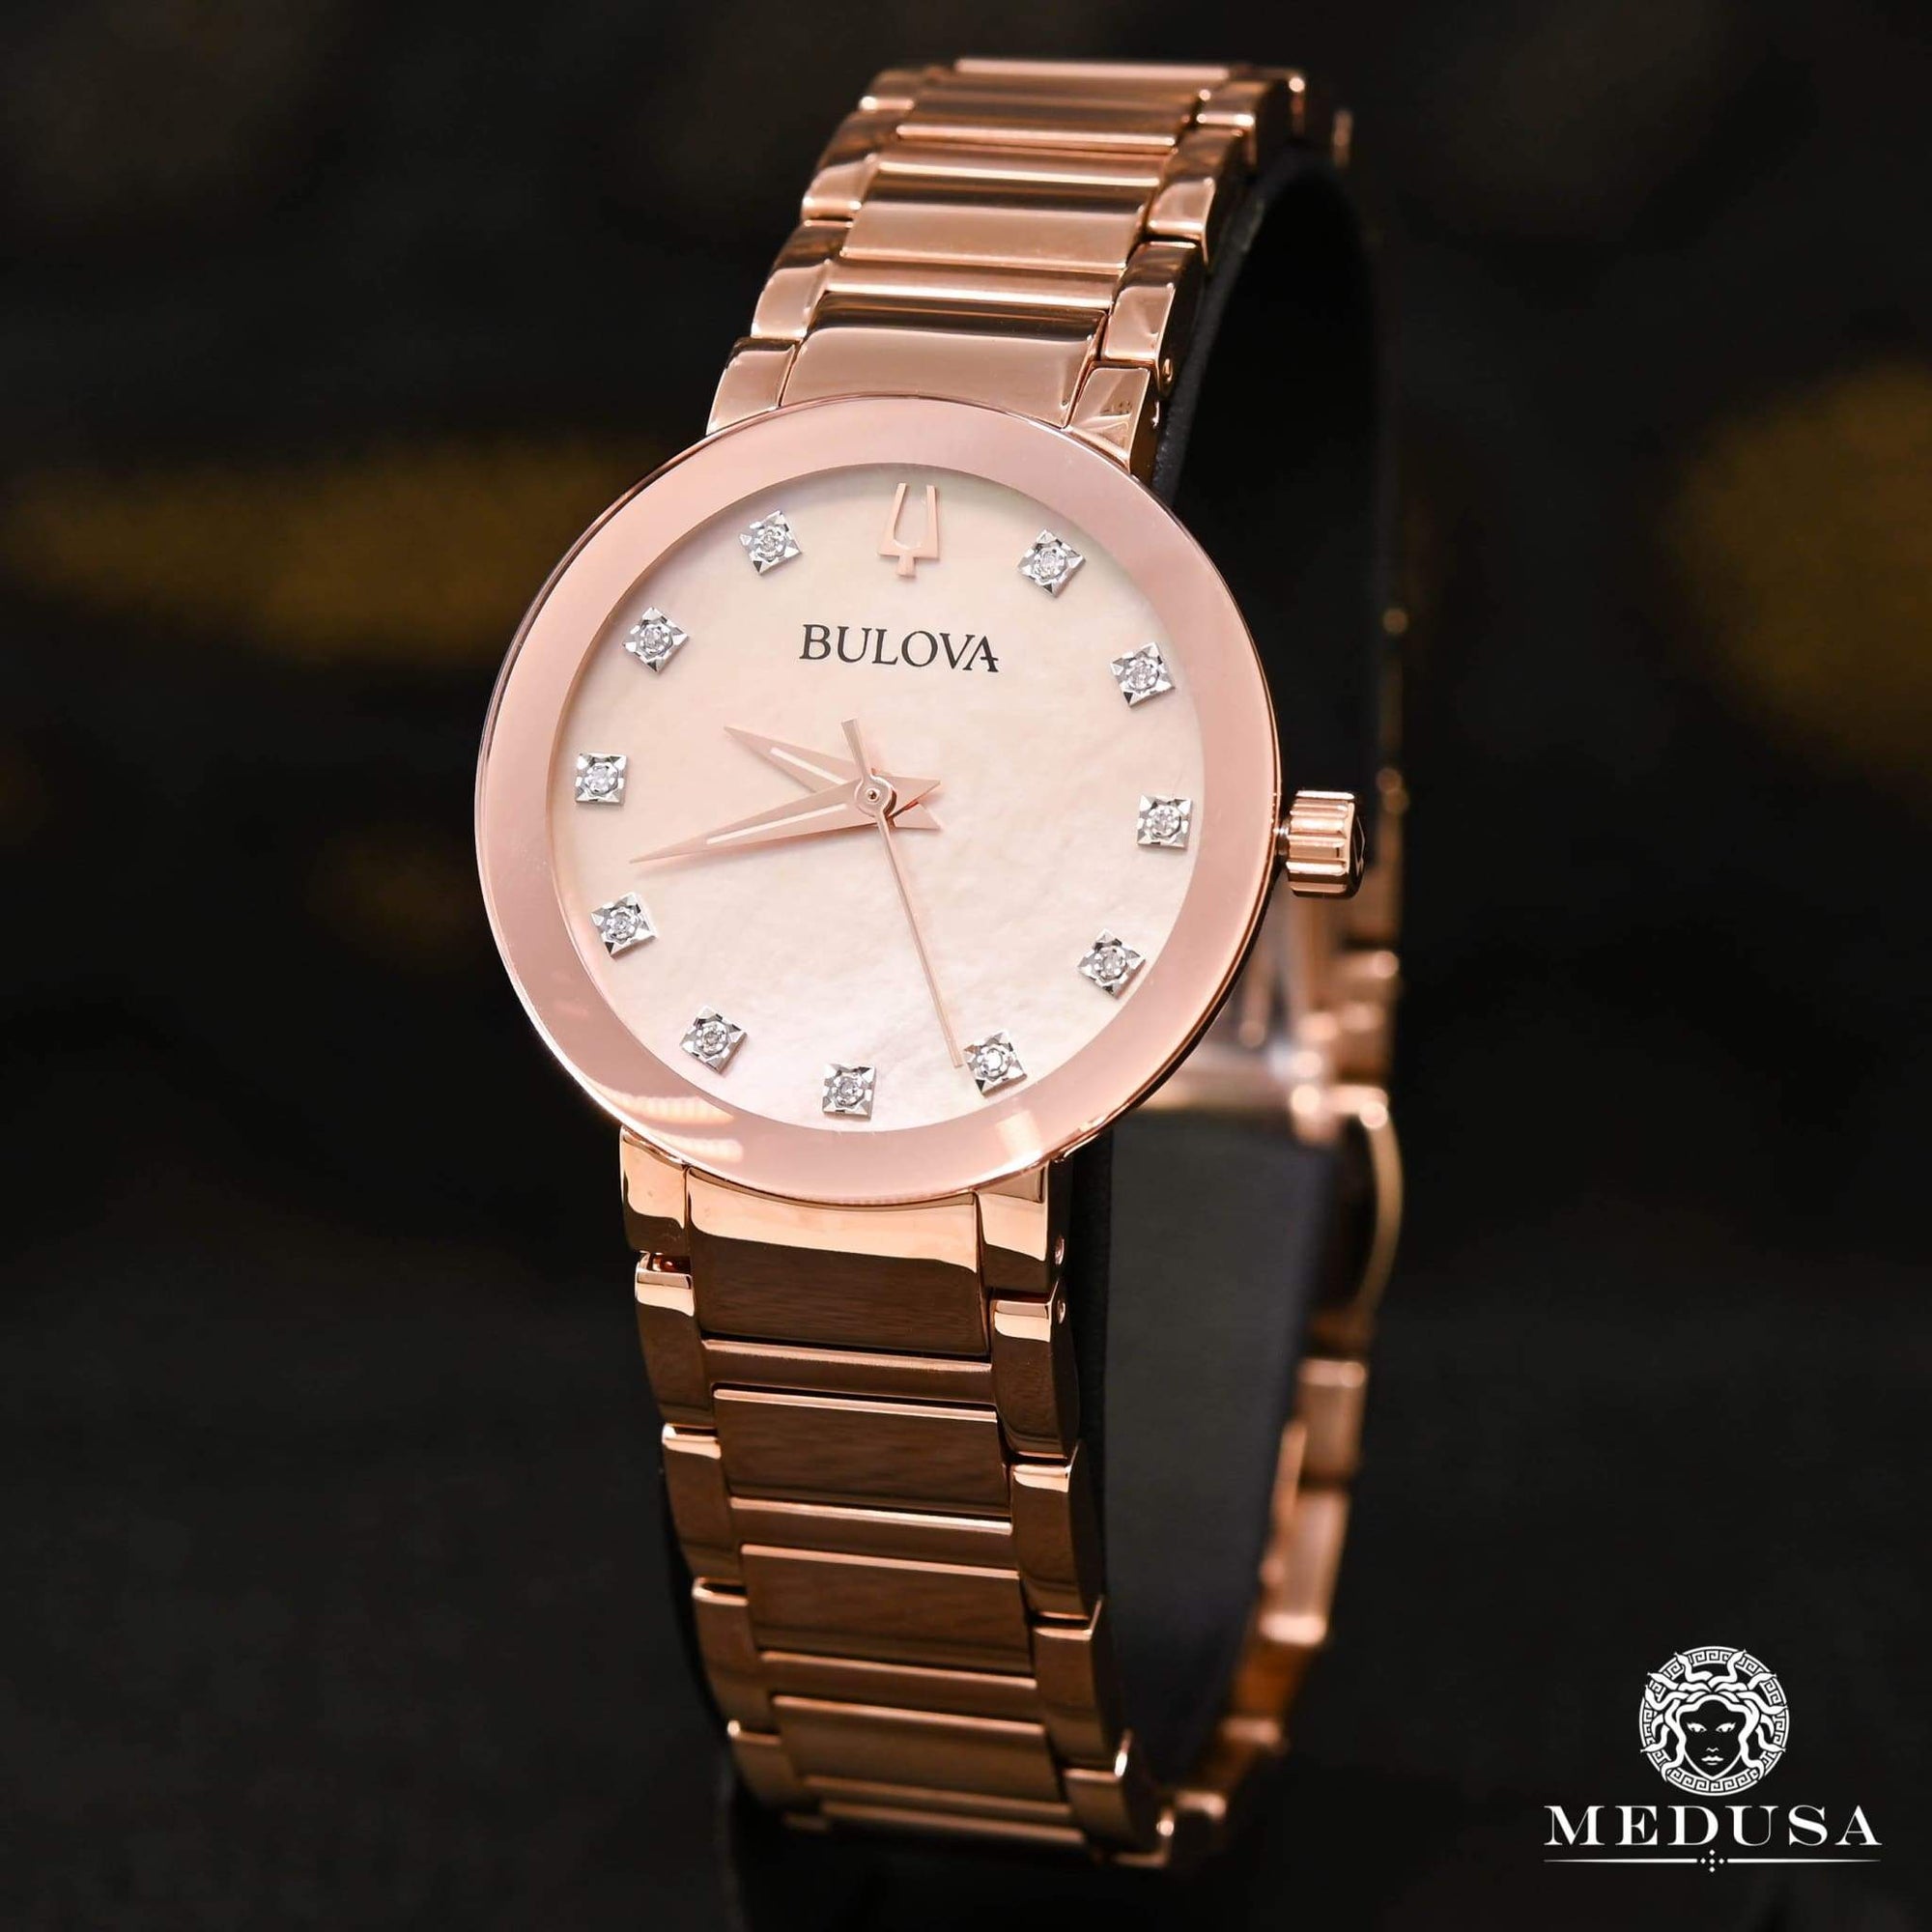 Bulova Watch | Bulova Futuro Women's Watch - 97P132 Rose Gold / Diamonds